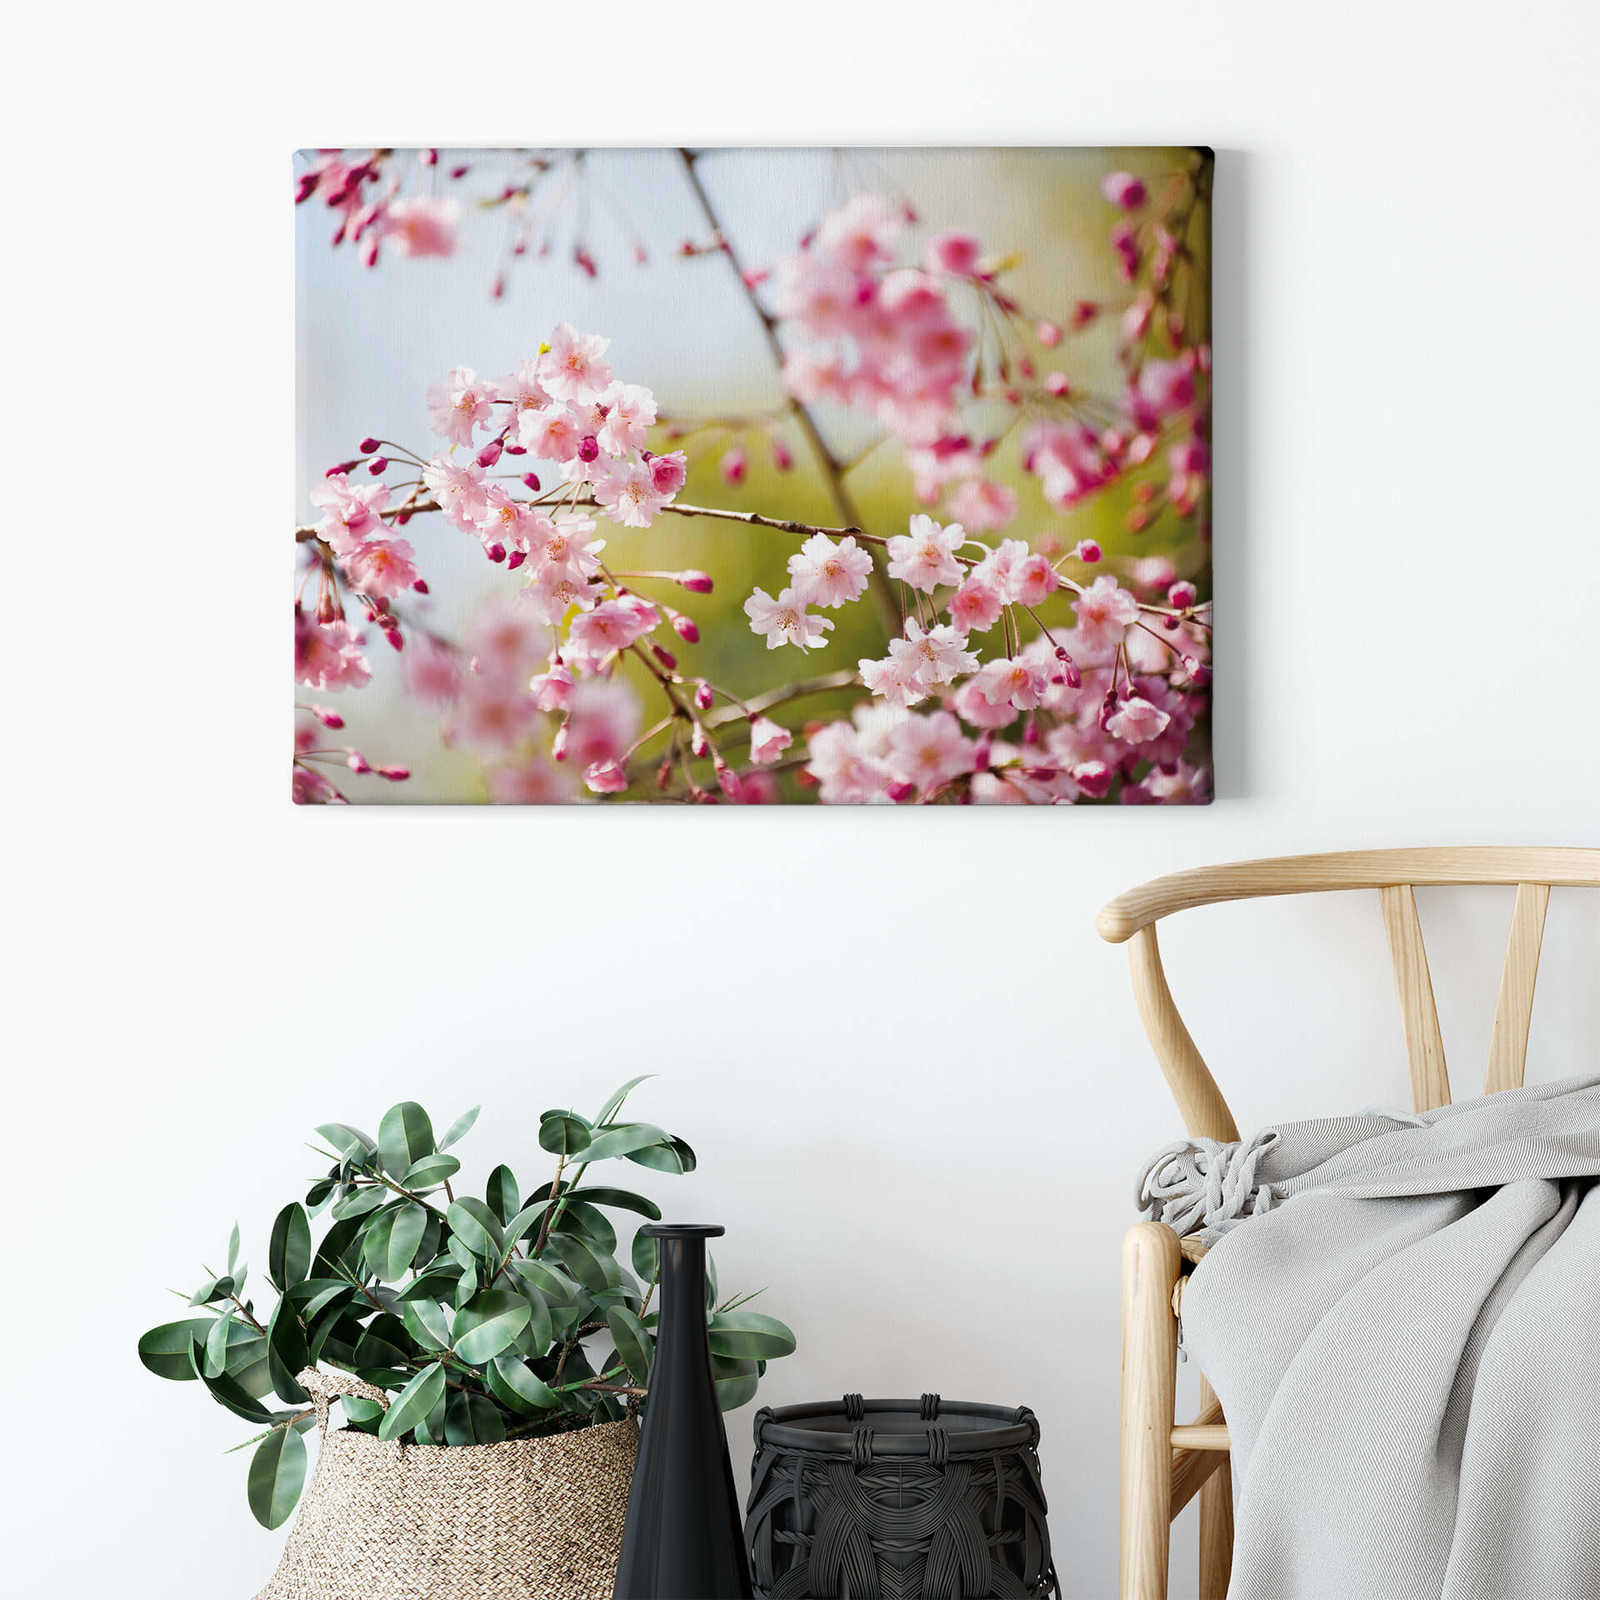             Naturel toile avec motif de fleurs de cerisier - 0,70 m x 0,50 m
        